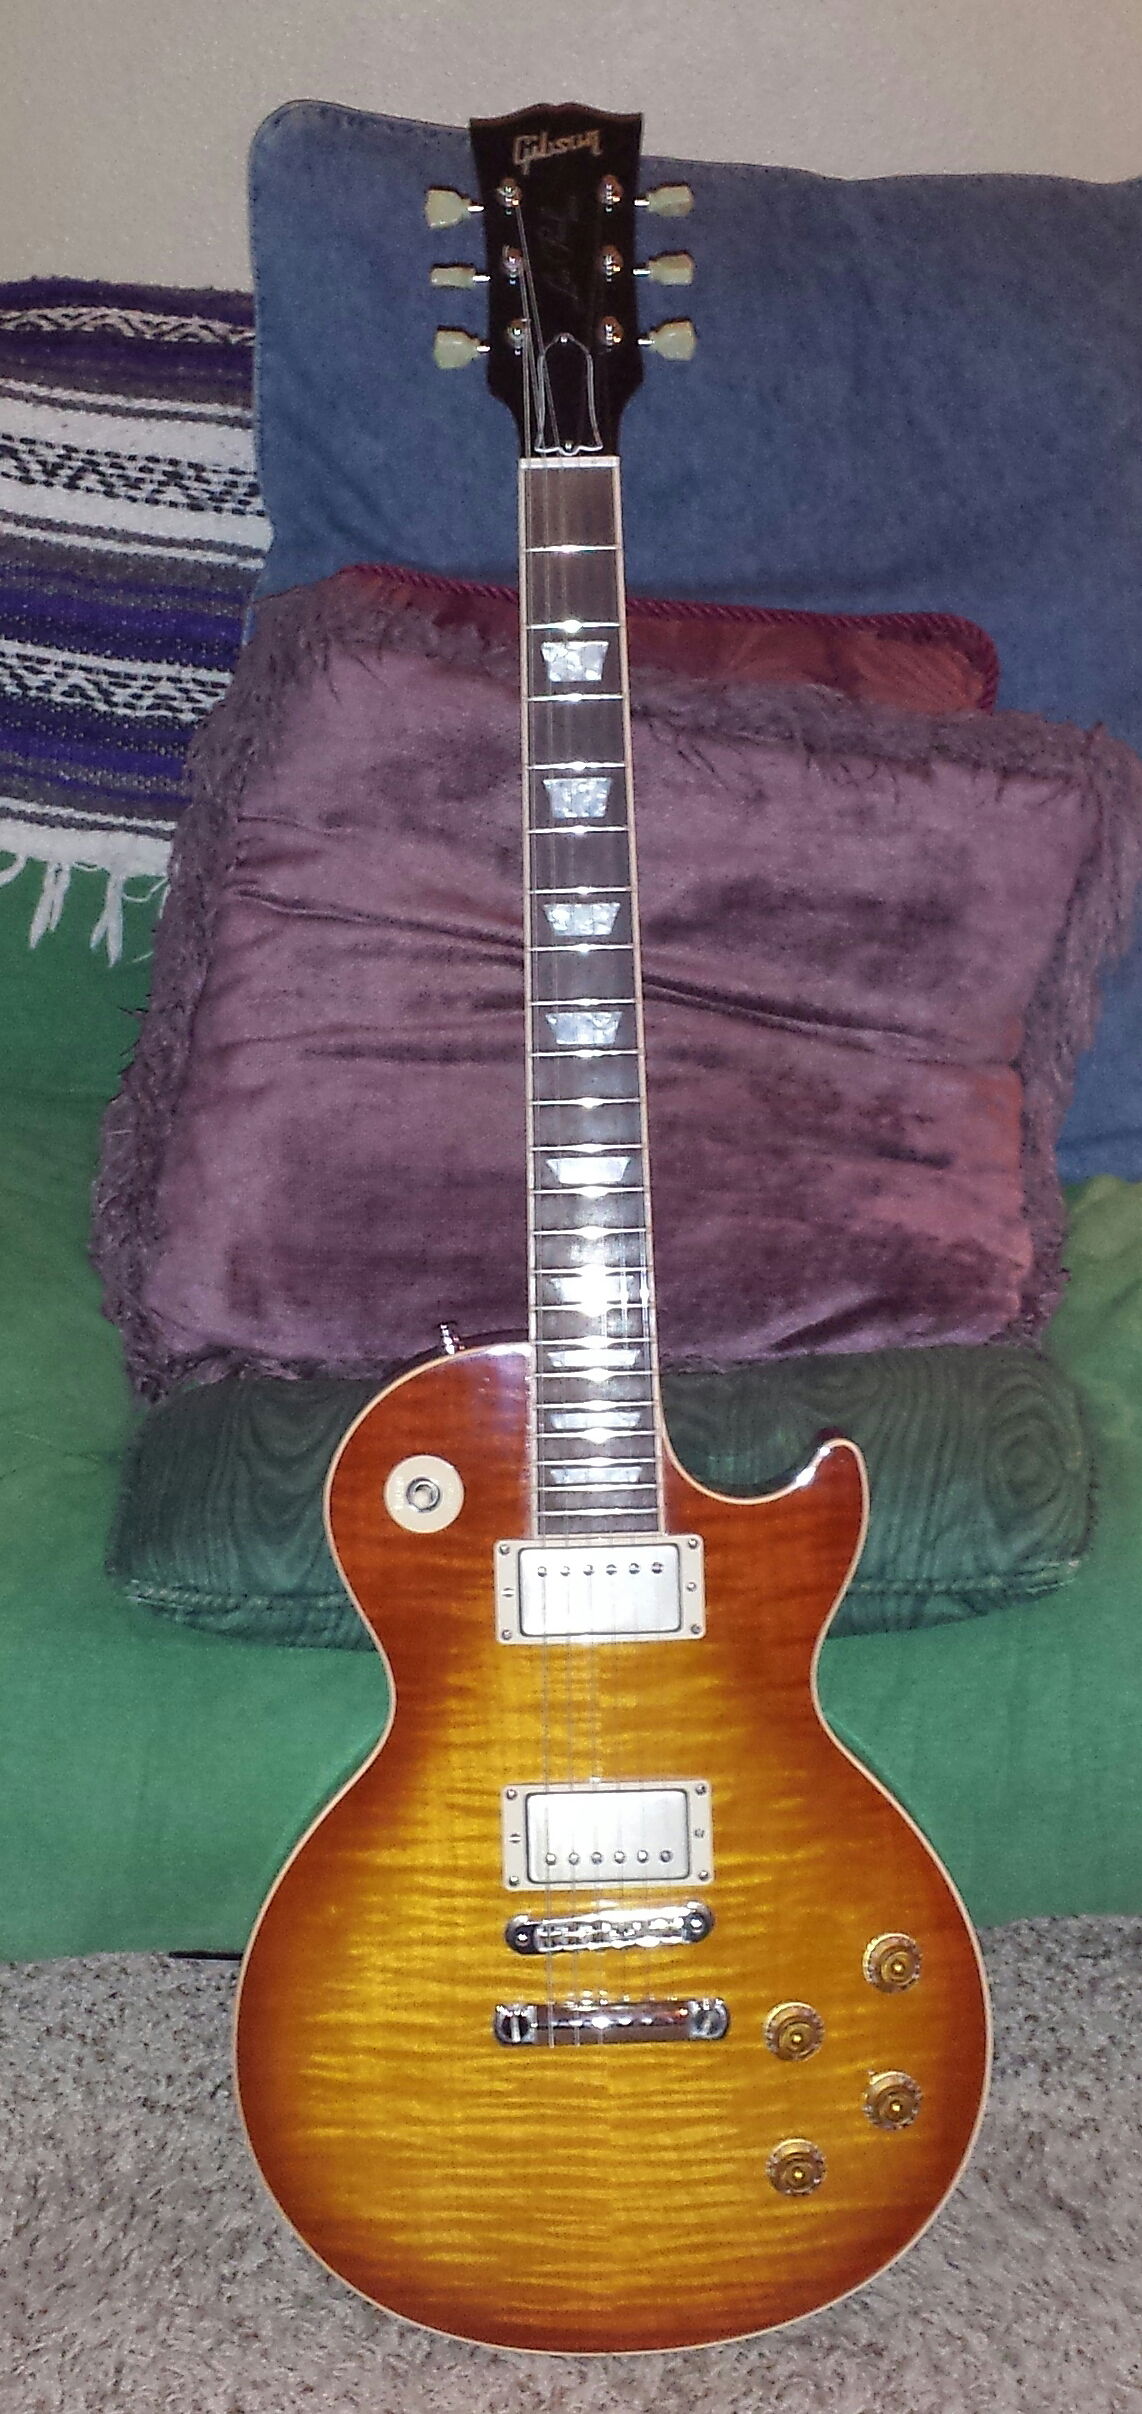 03' Gibson Les Paul Standard (Helen)